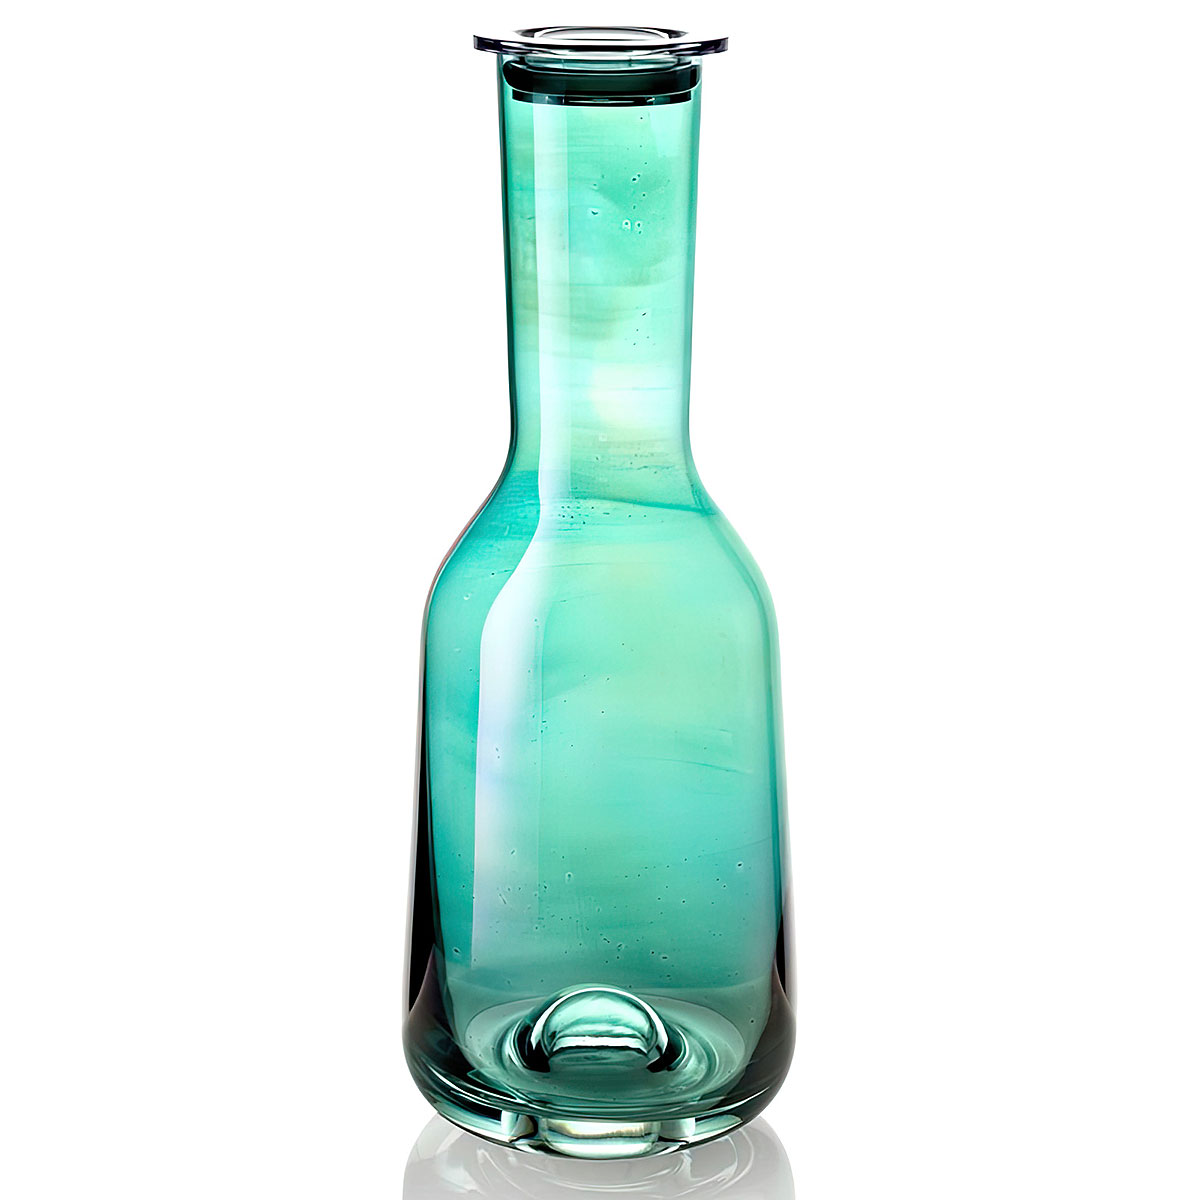 Бутылка с крышкой IVV Acquacheta, цвет зеленый IVV 8342.3 - фото 1